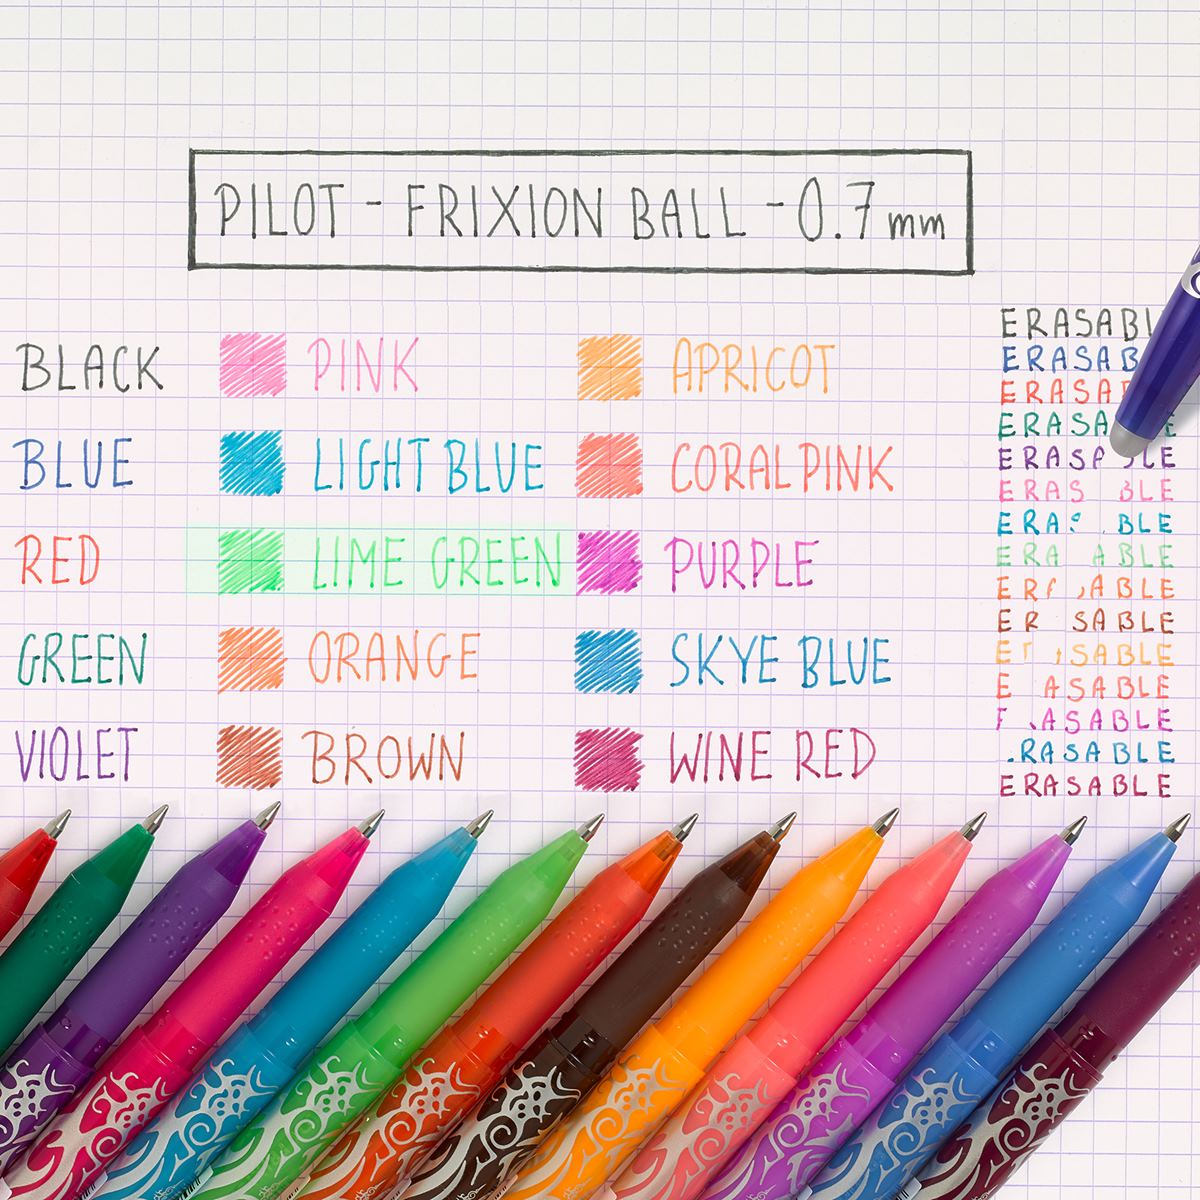 Pilot FriXion Ball Erasable Rollerball Pen - Violet